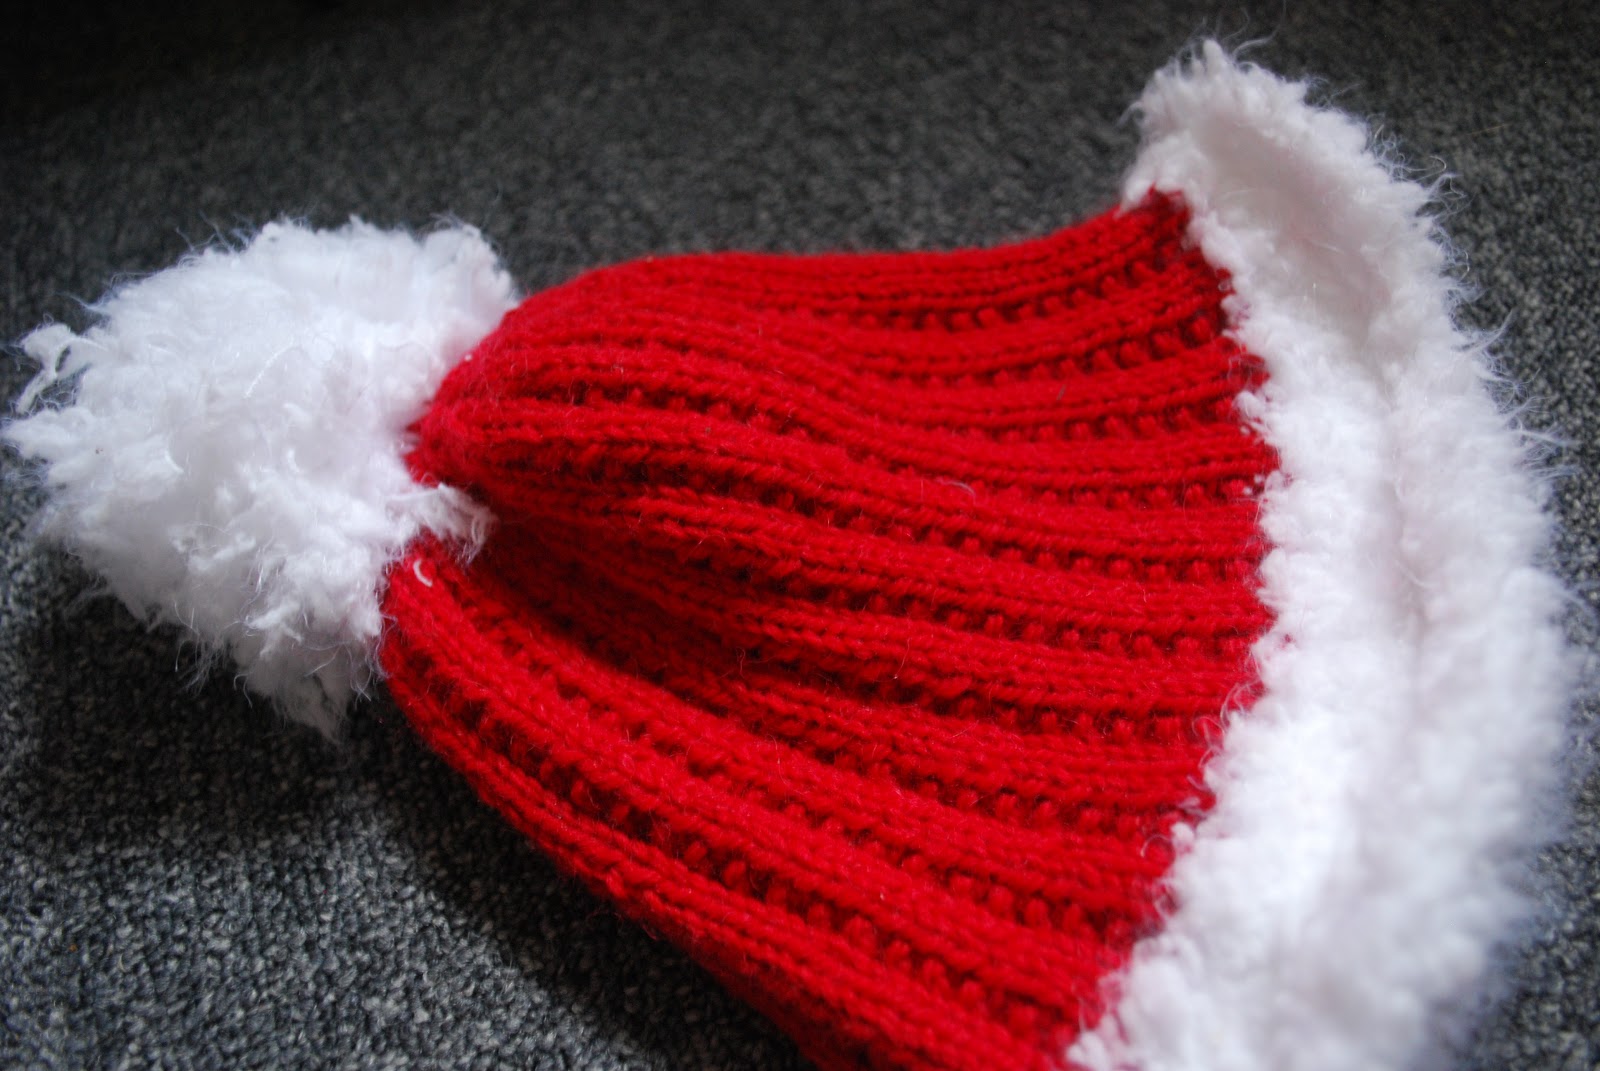 tricoter un bonnet de noel pour bebe